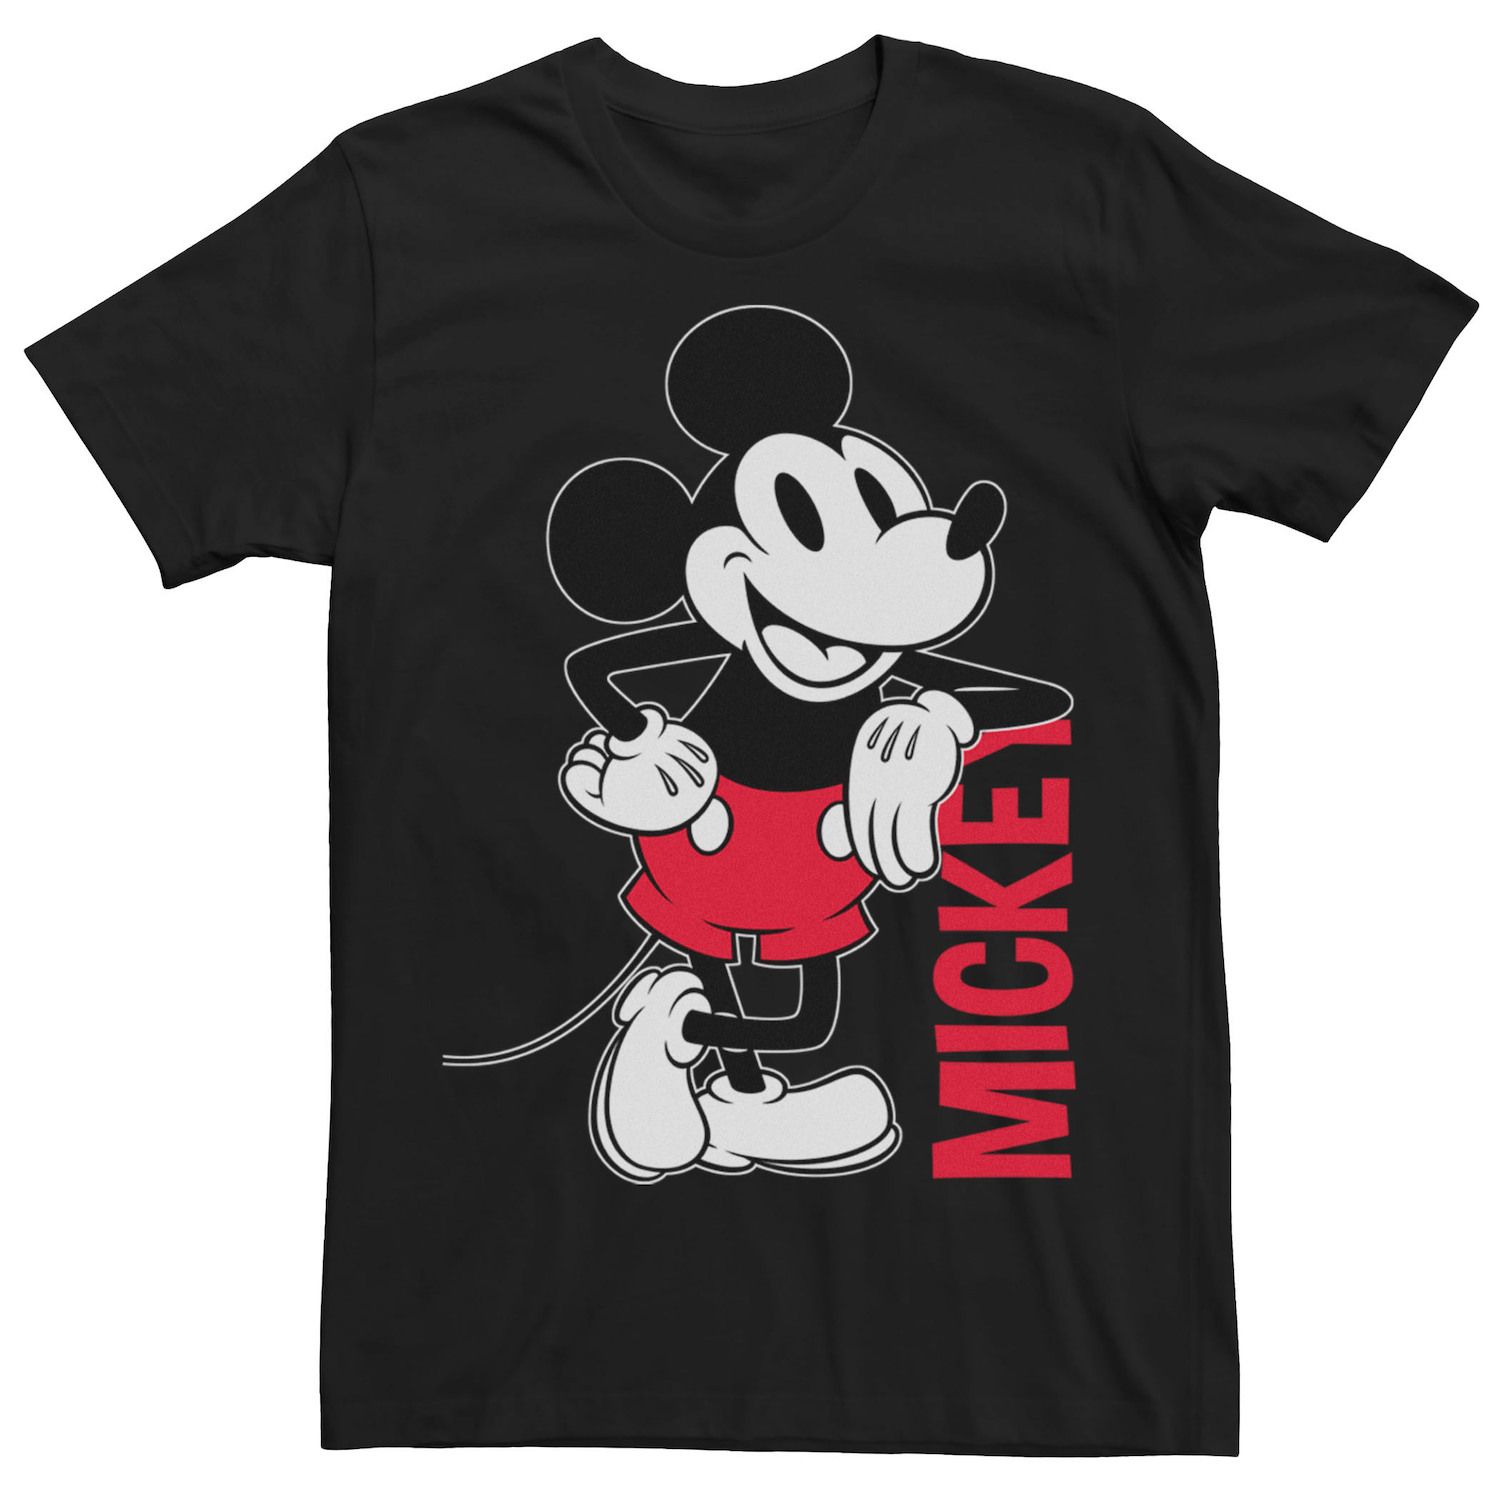 Мужская винтажная футболка с Микки Маусом и контуром Микки Мауса Disney